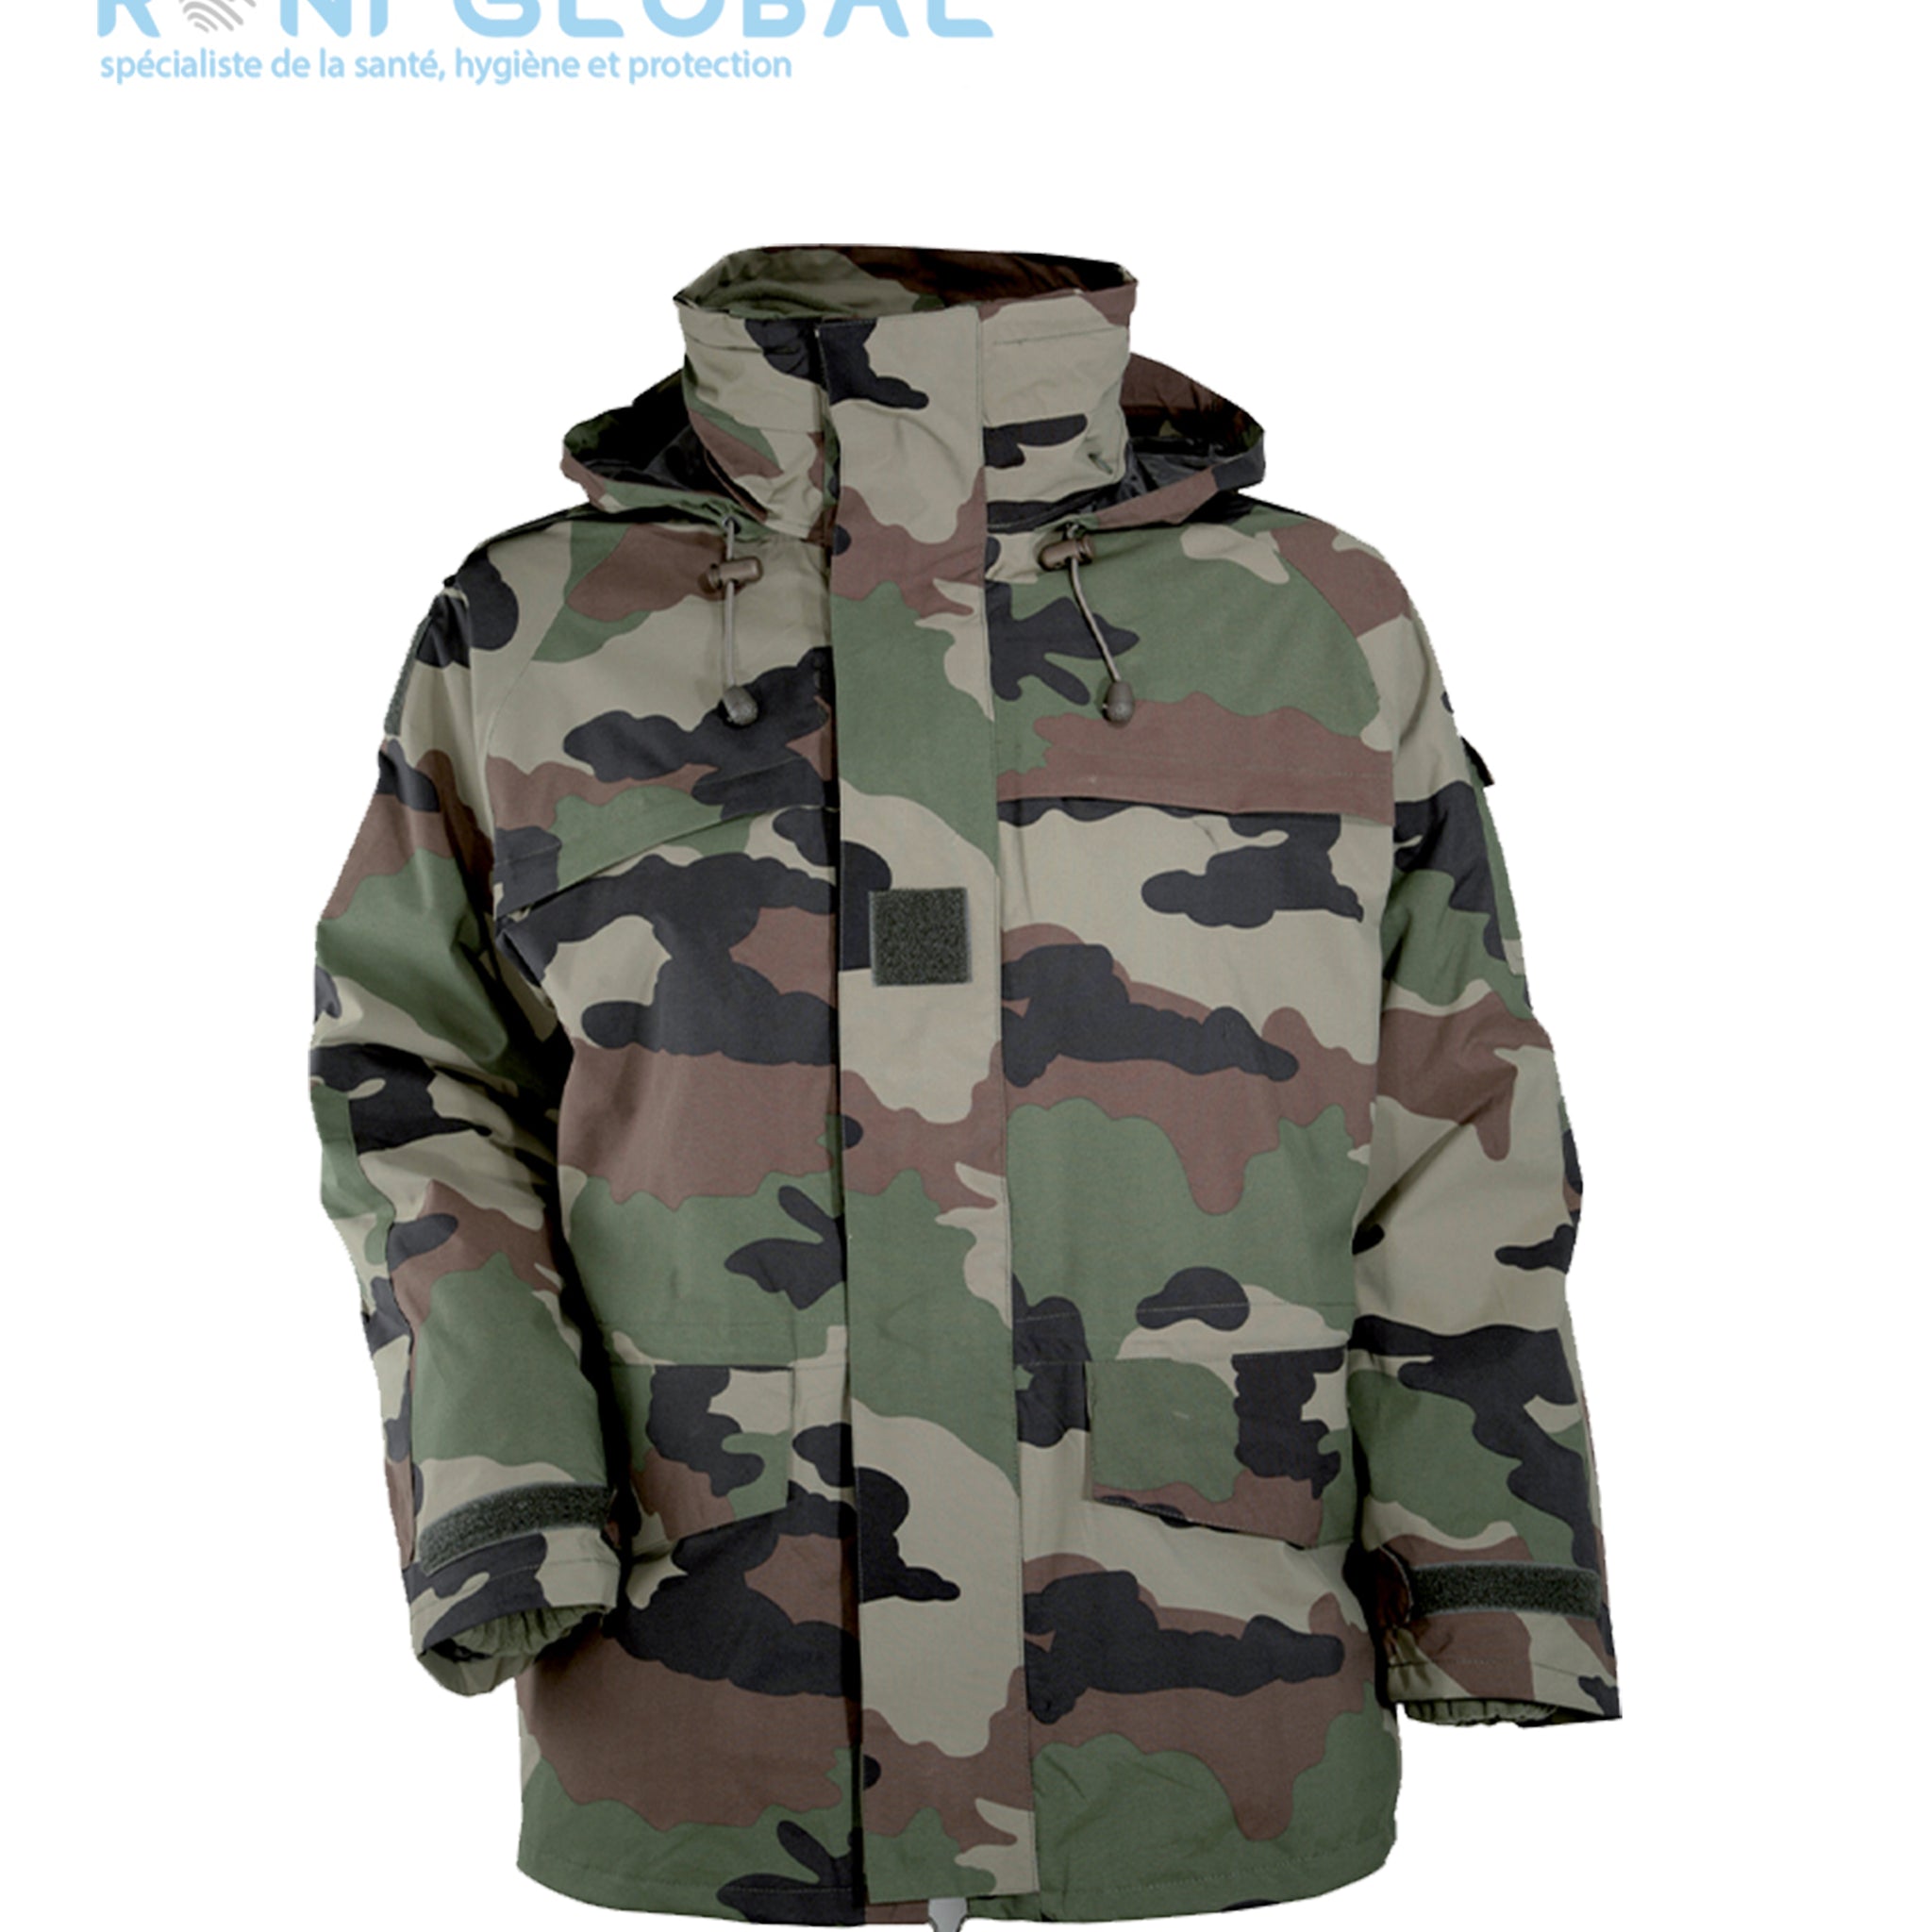 Veste camouflage type militaire imperméable et respirant, avec gilet polaire amovible, en coton et polyester 10 poches - VESTE GILET AMOVIBLE CITYGUARD